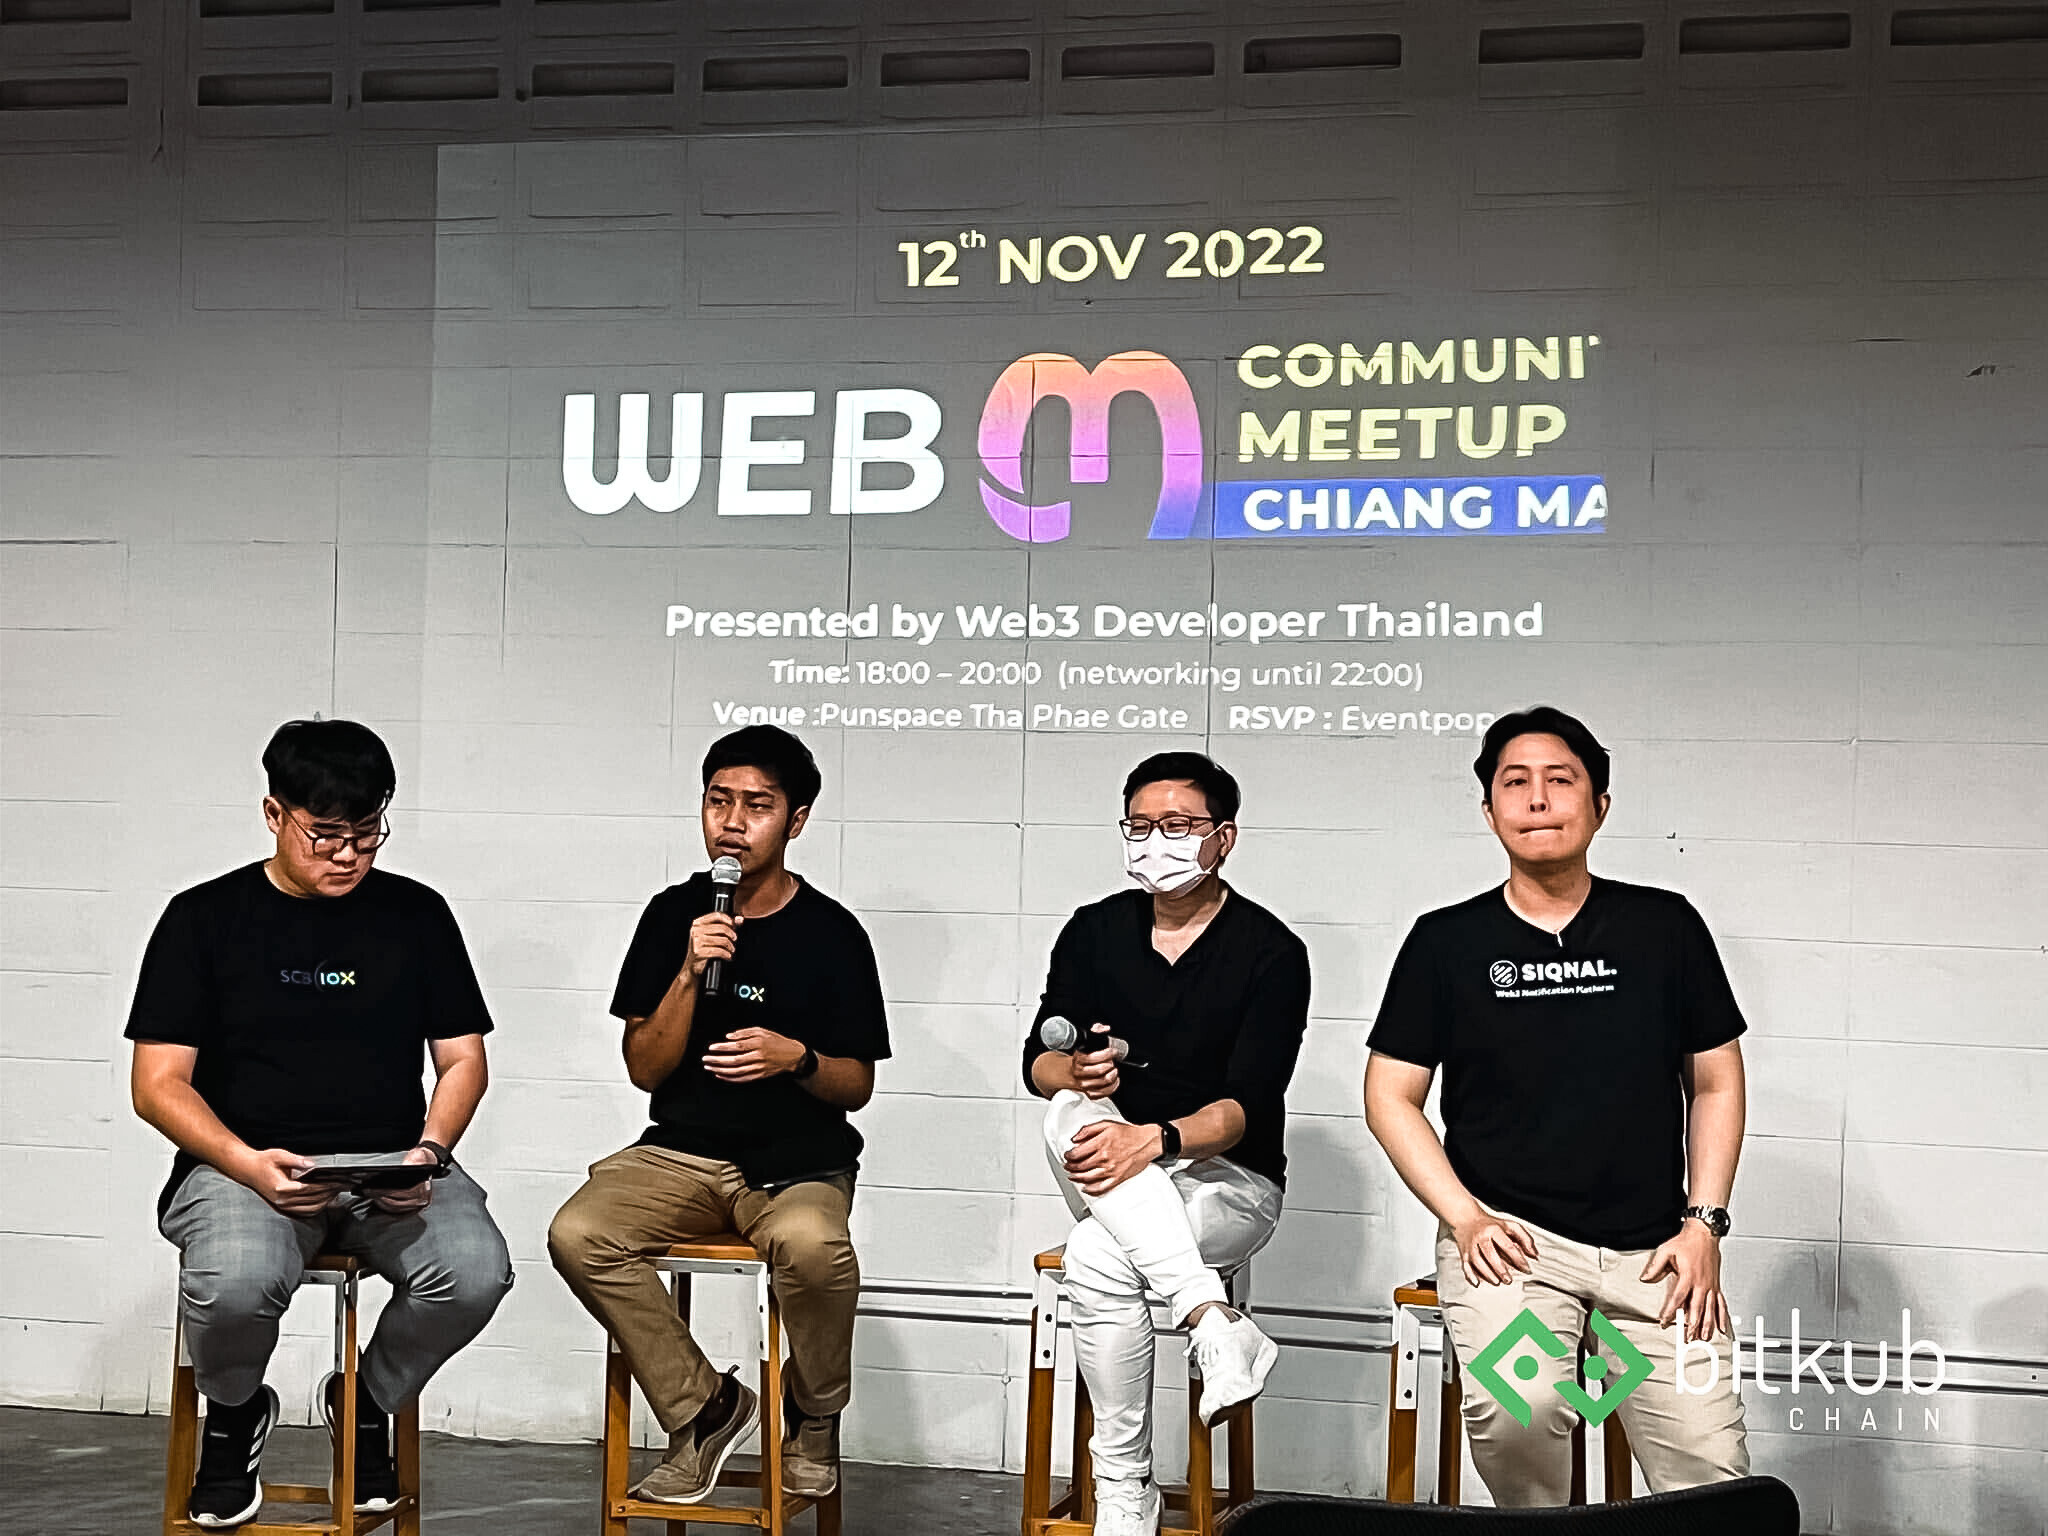 ทีมนักพัฒนา Bitkub Chain ยกทัพเข้าร่วมงาน Dev Mountain Tech Festival และ Web3 Community Meetup ณ จังหวัดเชียงใหม่ พร้อมร่วมแชร์มุมมองเกี่ยวกับการพัฒนา Web3